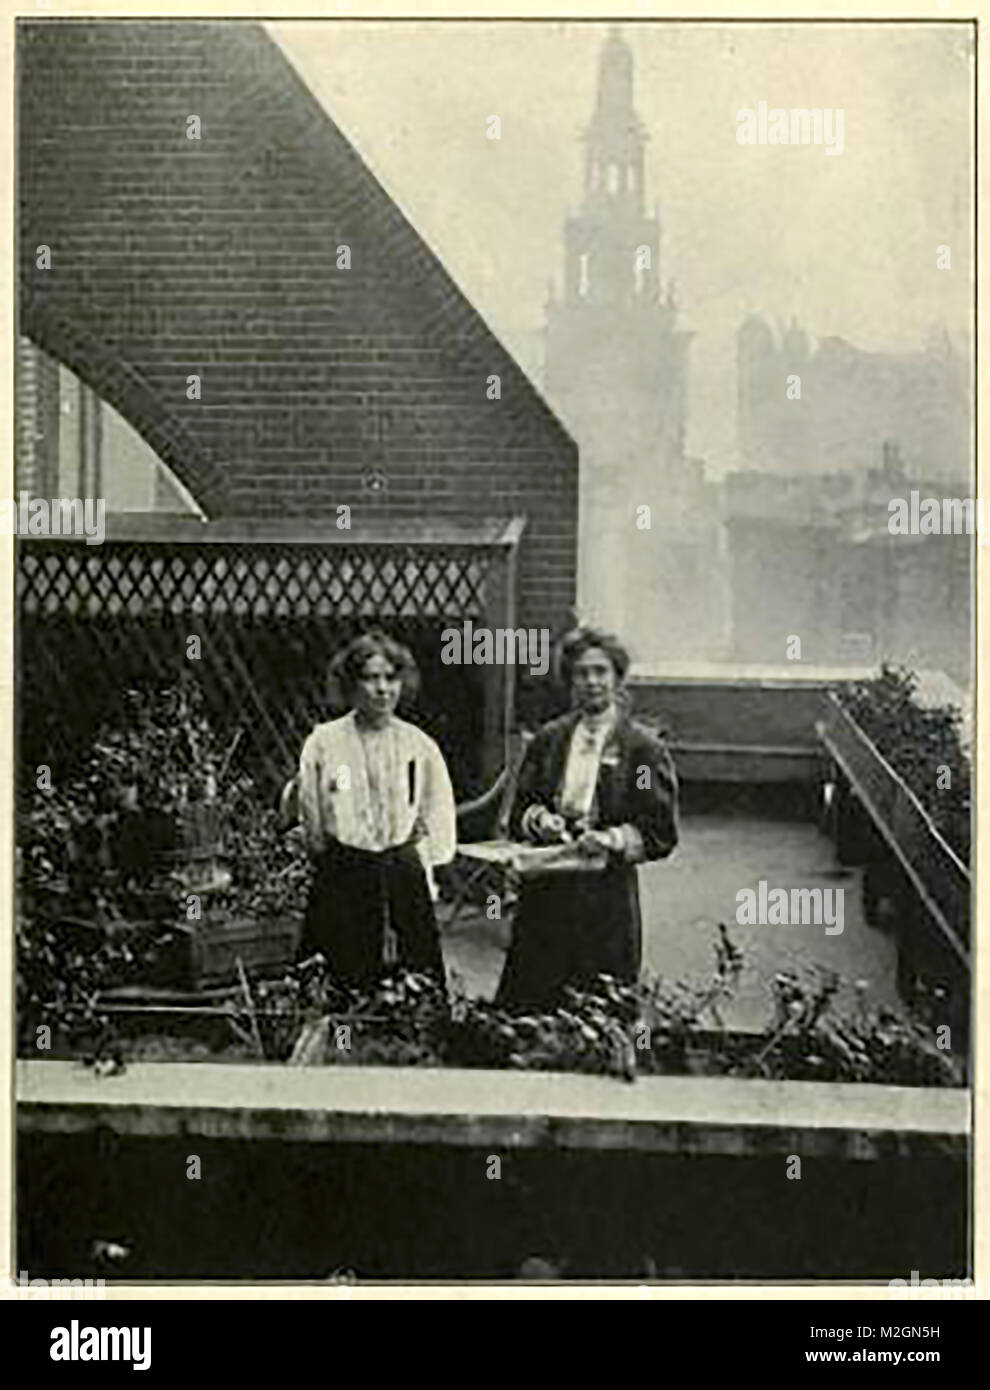 Les suffragettes - Emmeline Pankhurst et Sylvain se cachant de la police le toit-jardin à St Clement's Inn - Octobre 1908 Banque D'Images